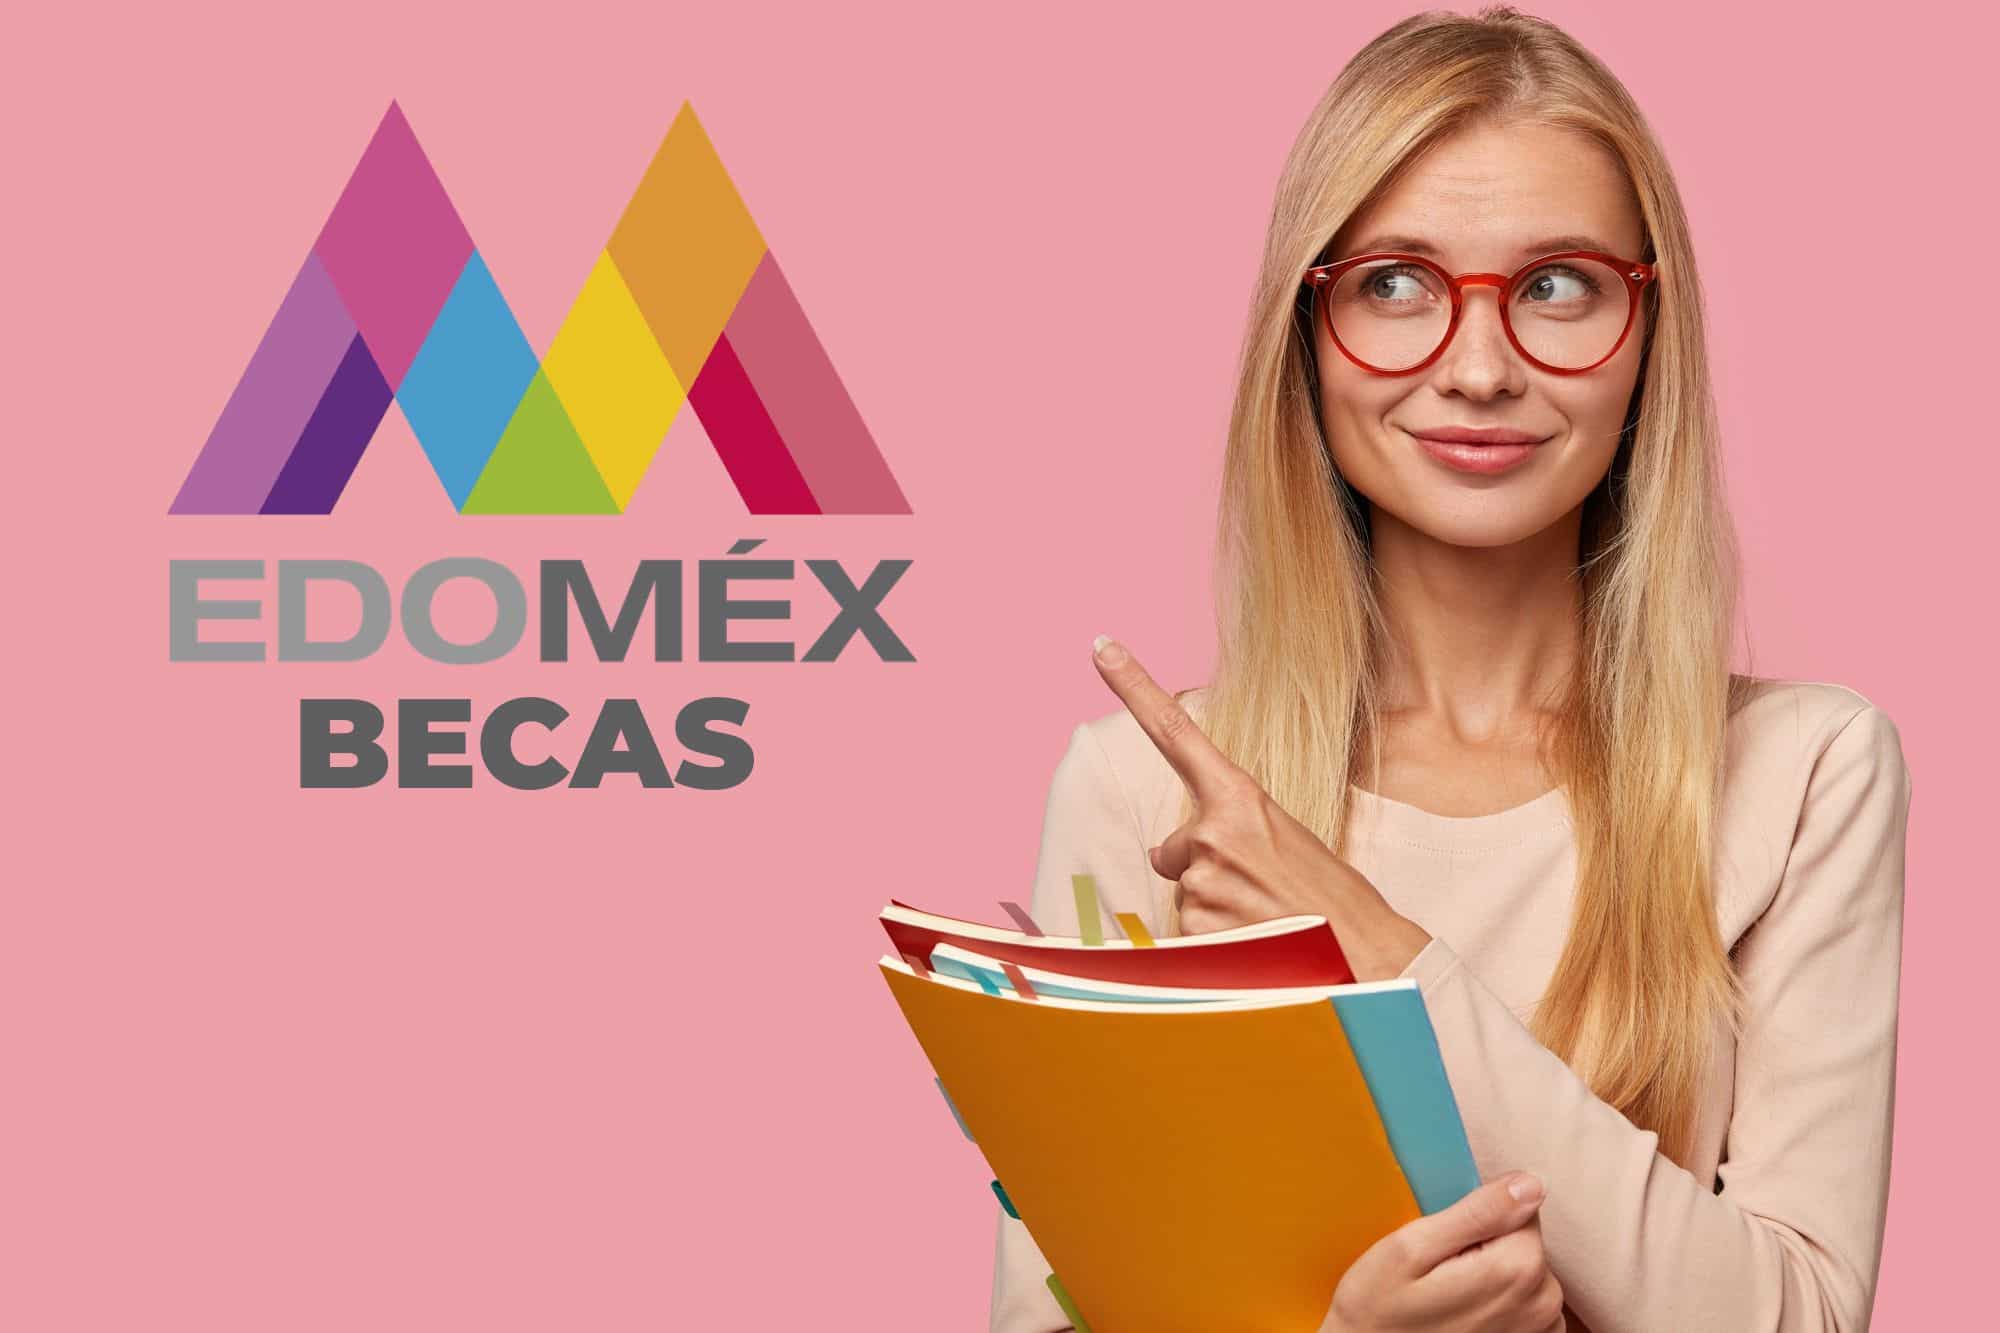 Chica mexicana beneficiaria de una de las becas Edomex para educación